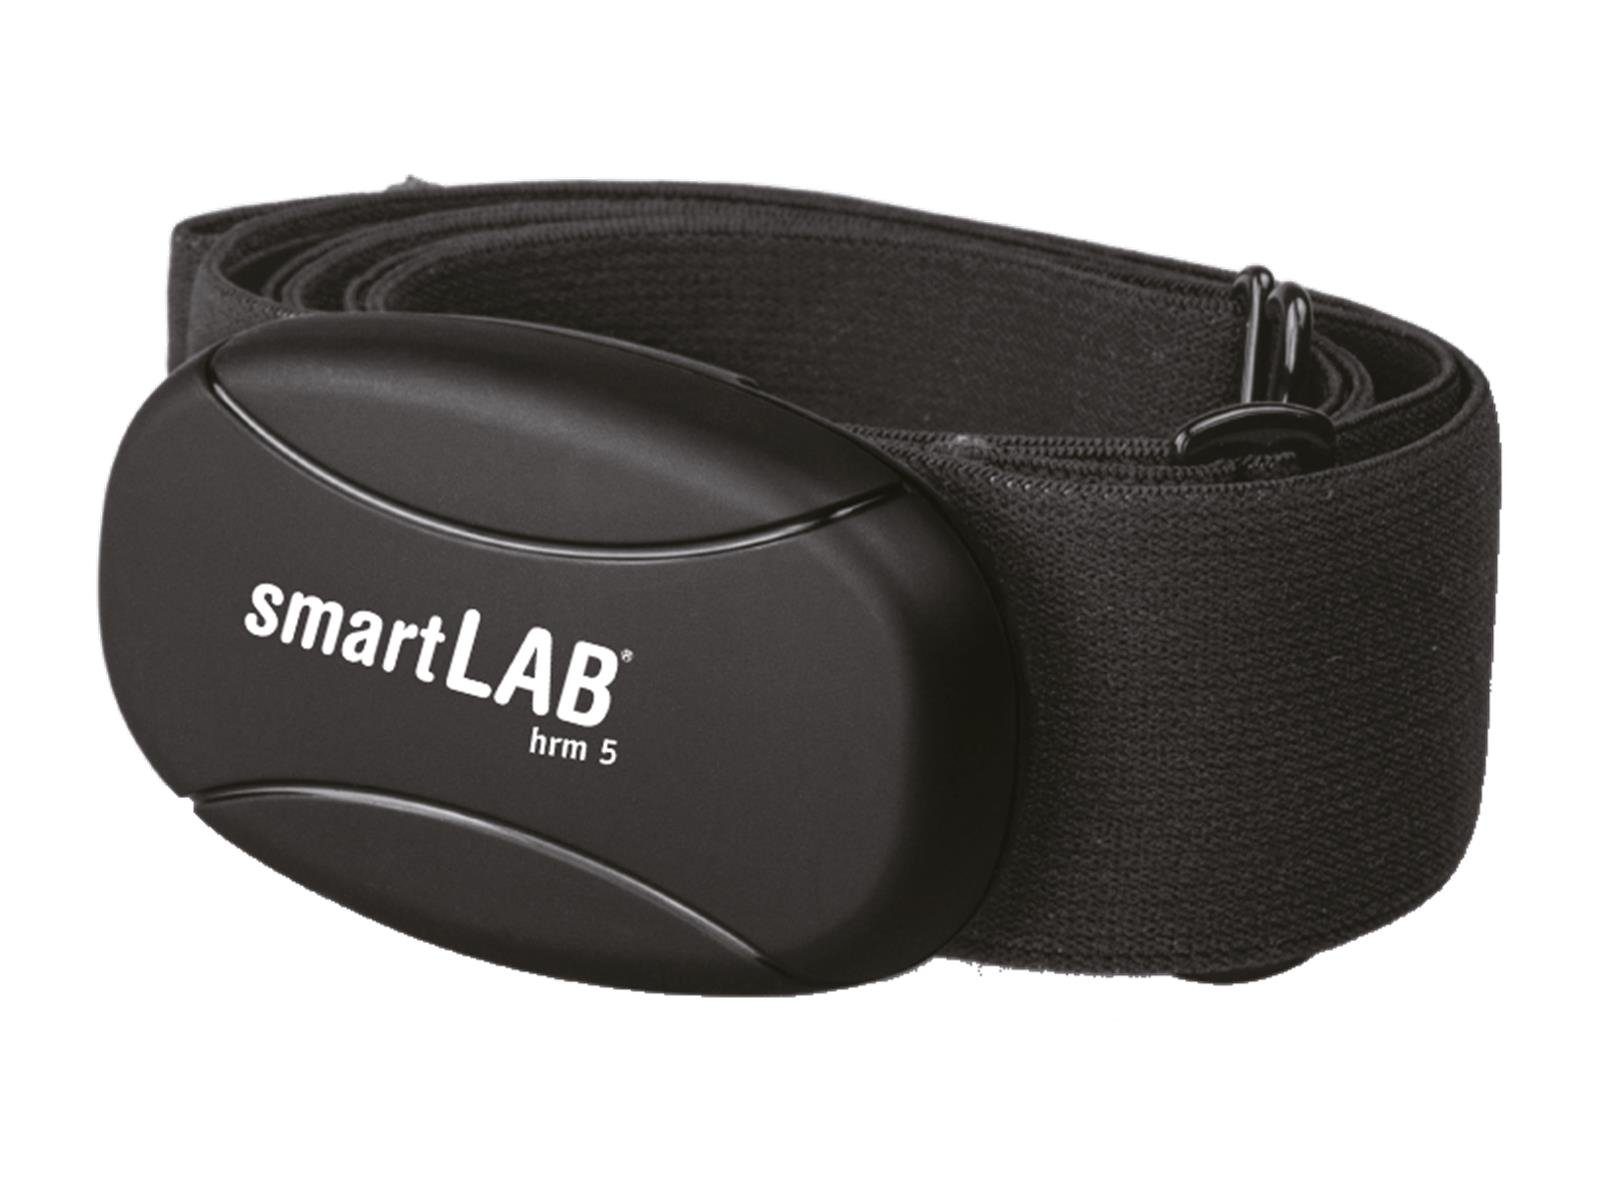 smartLAB Brustgurt smartLAB hrm 5 Herzfrequenzmessgerät Brustgurt mit non-coded 5,3 KHz